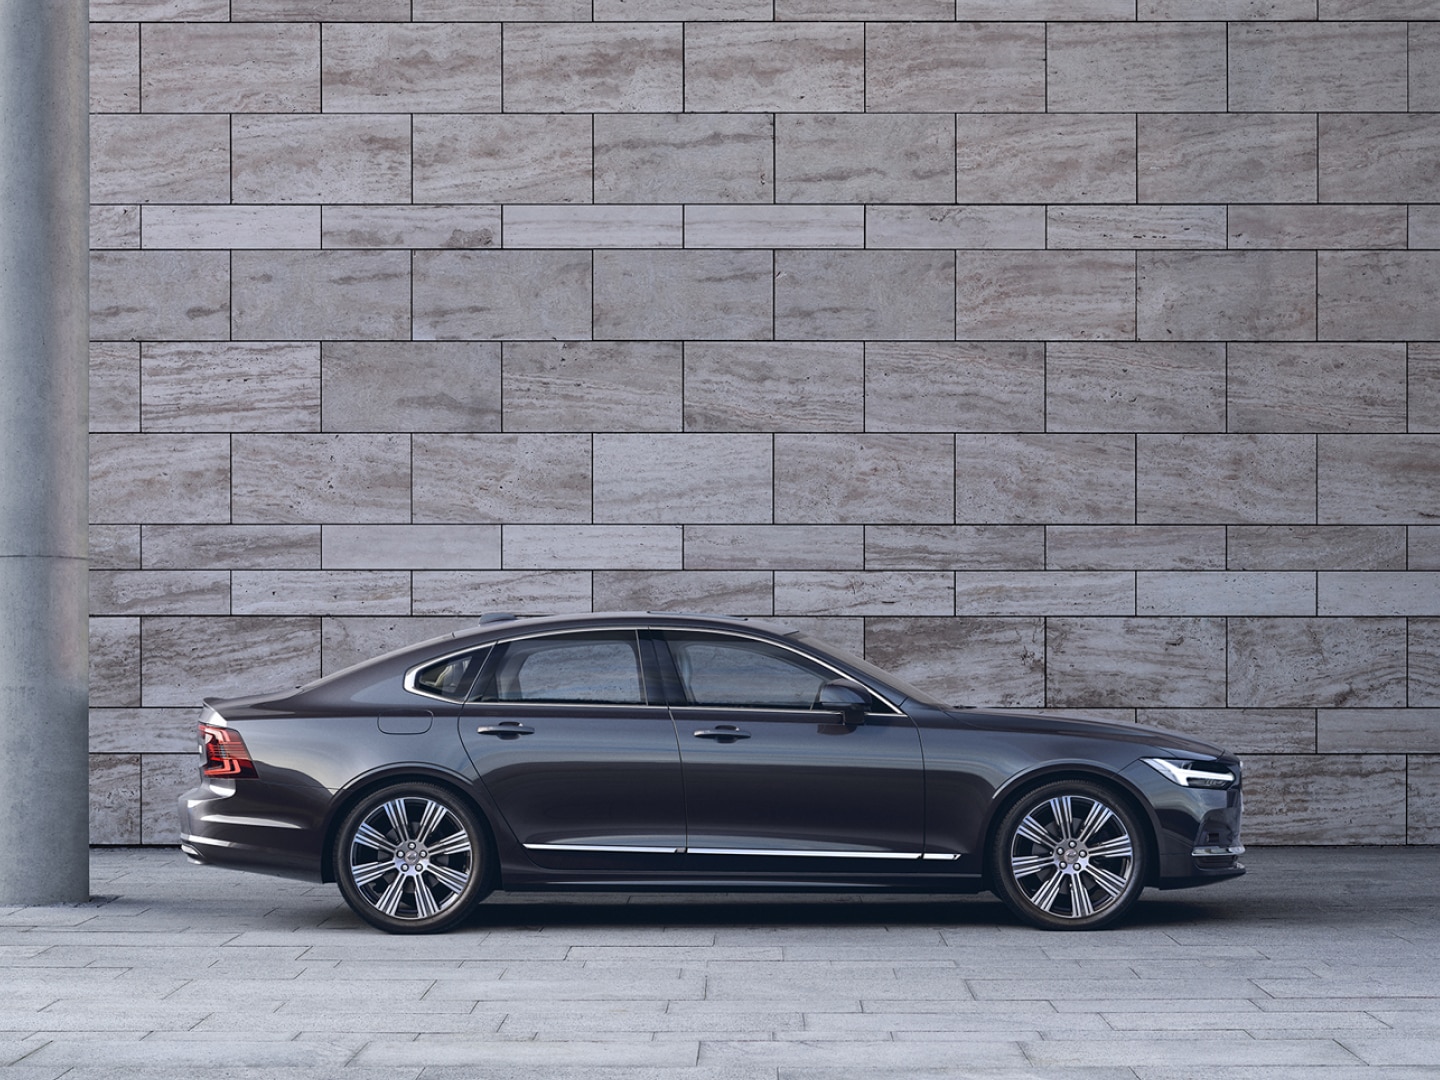 Zijaanzicht van een Volvo S90 die voor een grijze betonnen muur geparkeerd is.